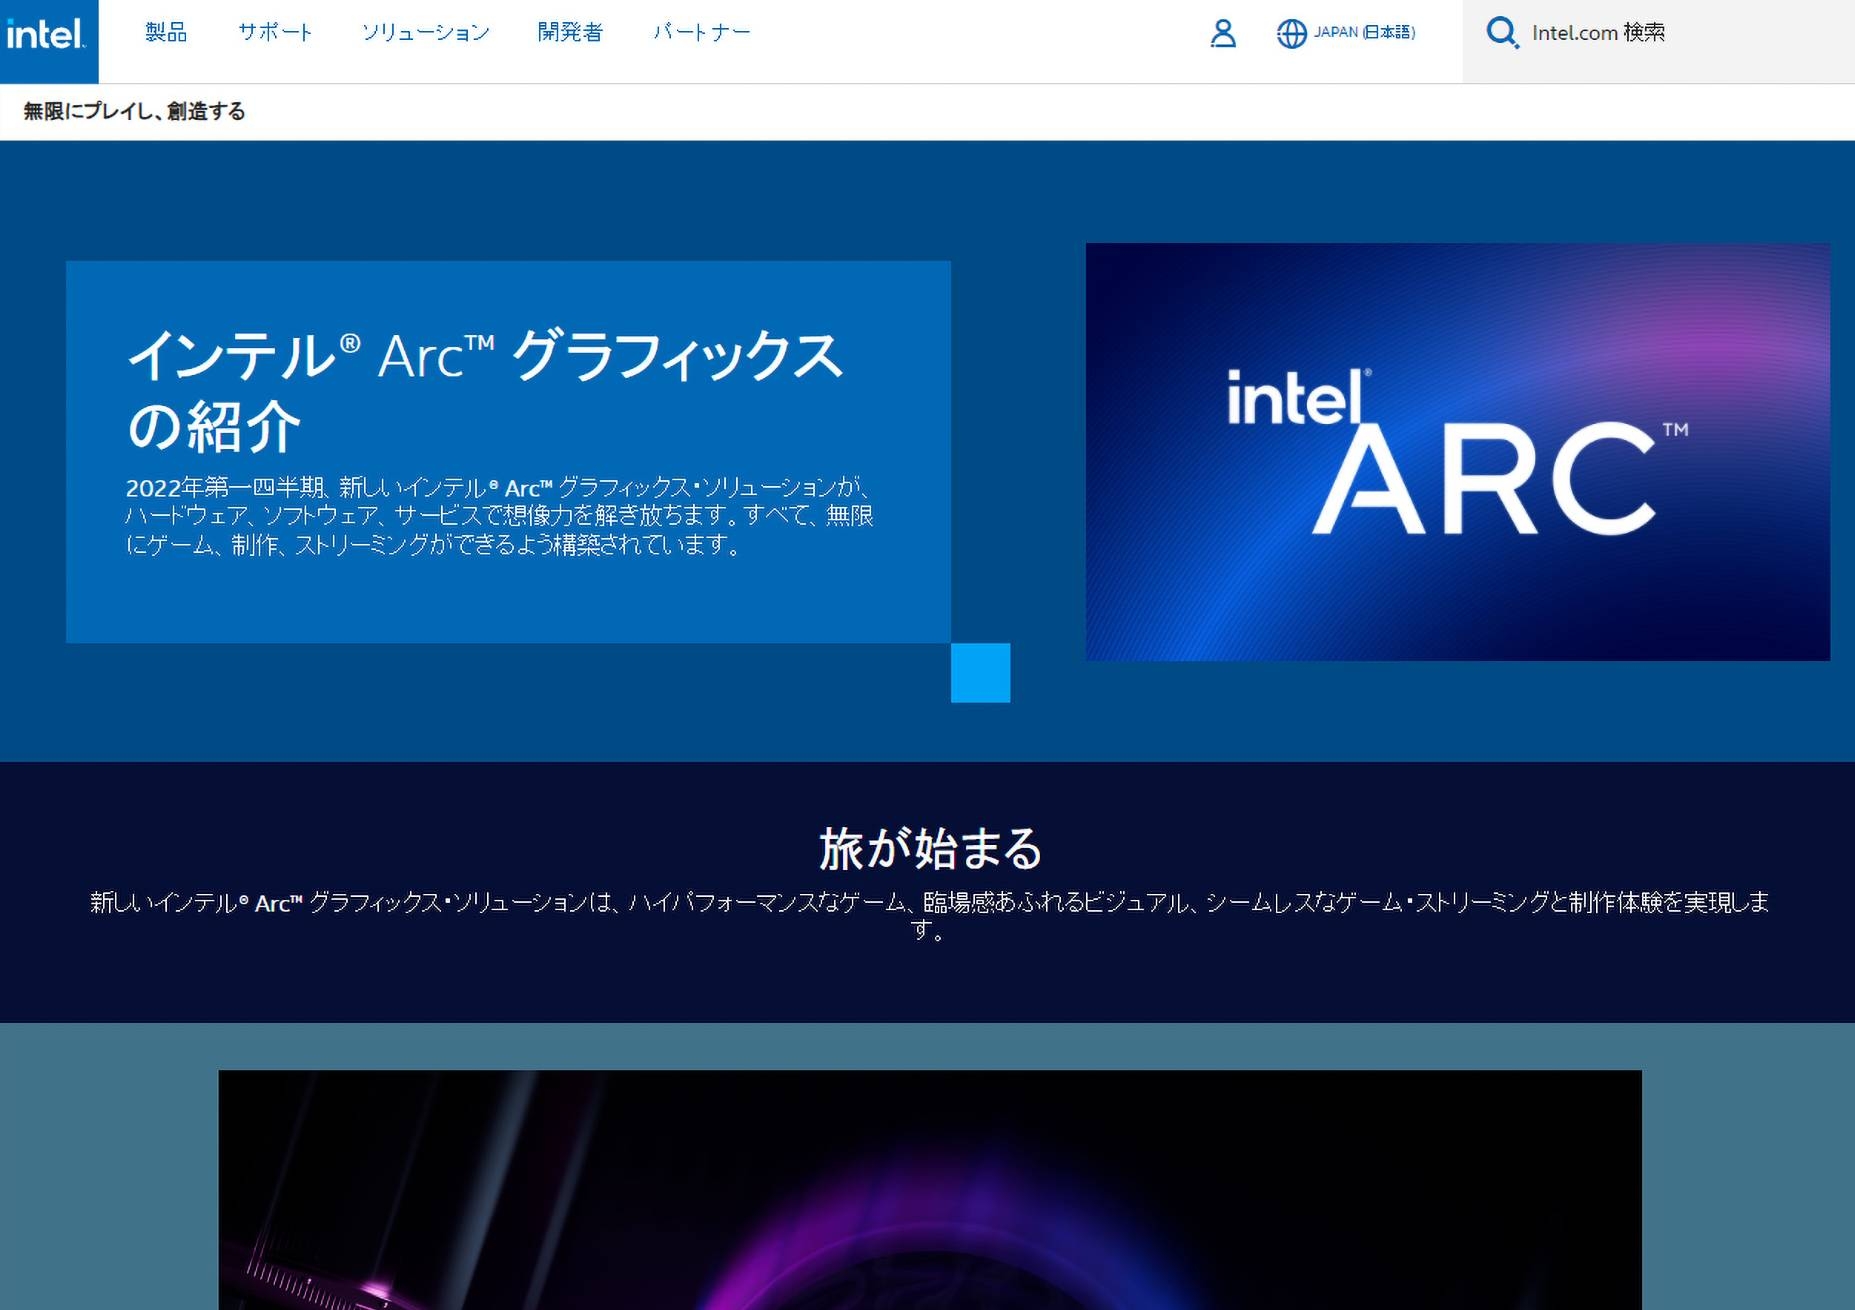 Intel Arcのホームページはすでに公開されている。2022年第1四半期からデスクトップPC、ノートPCの搭載製品が提供されることが予告されている。URLは、https://www.intel.co.jp/content/www/jp/ja/architecture-and-technology/visual-technology/arc-discrete-graphics.html  （出所：米Intel）